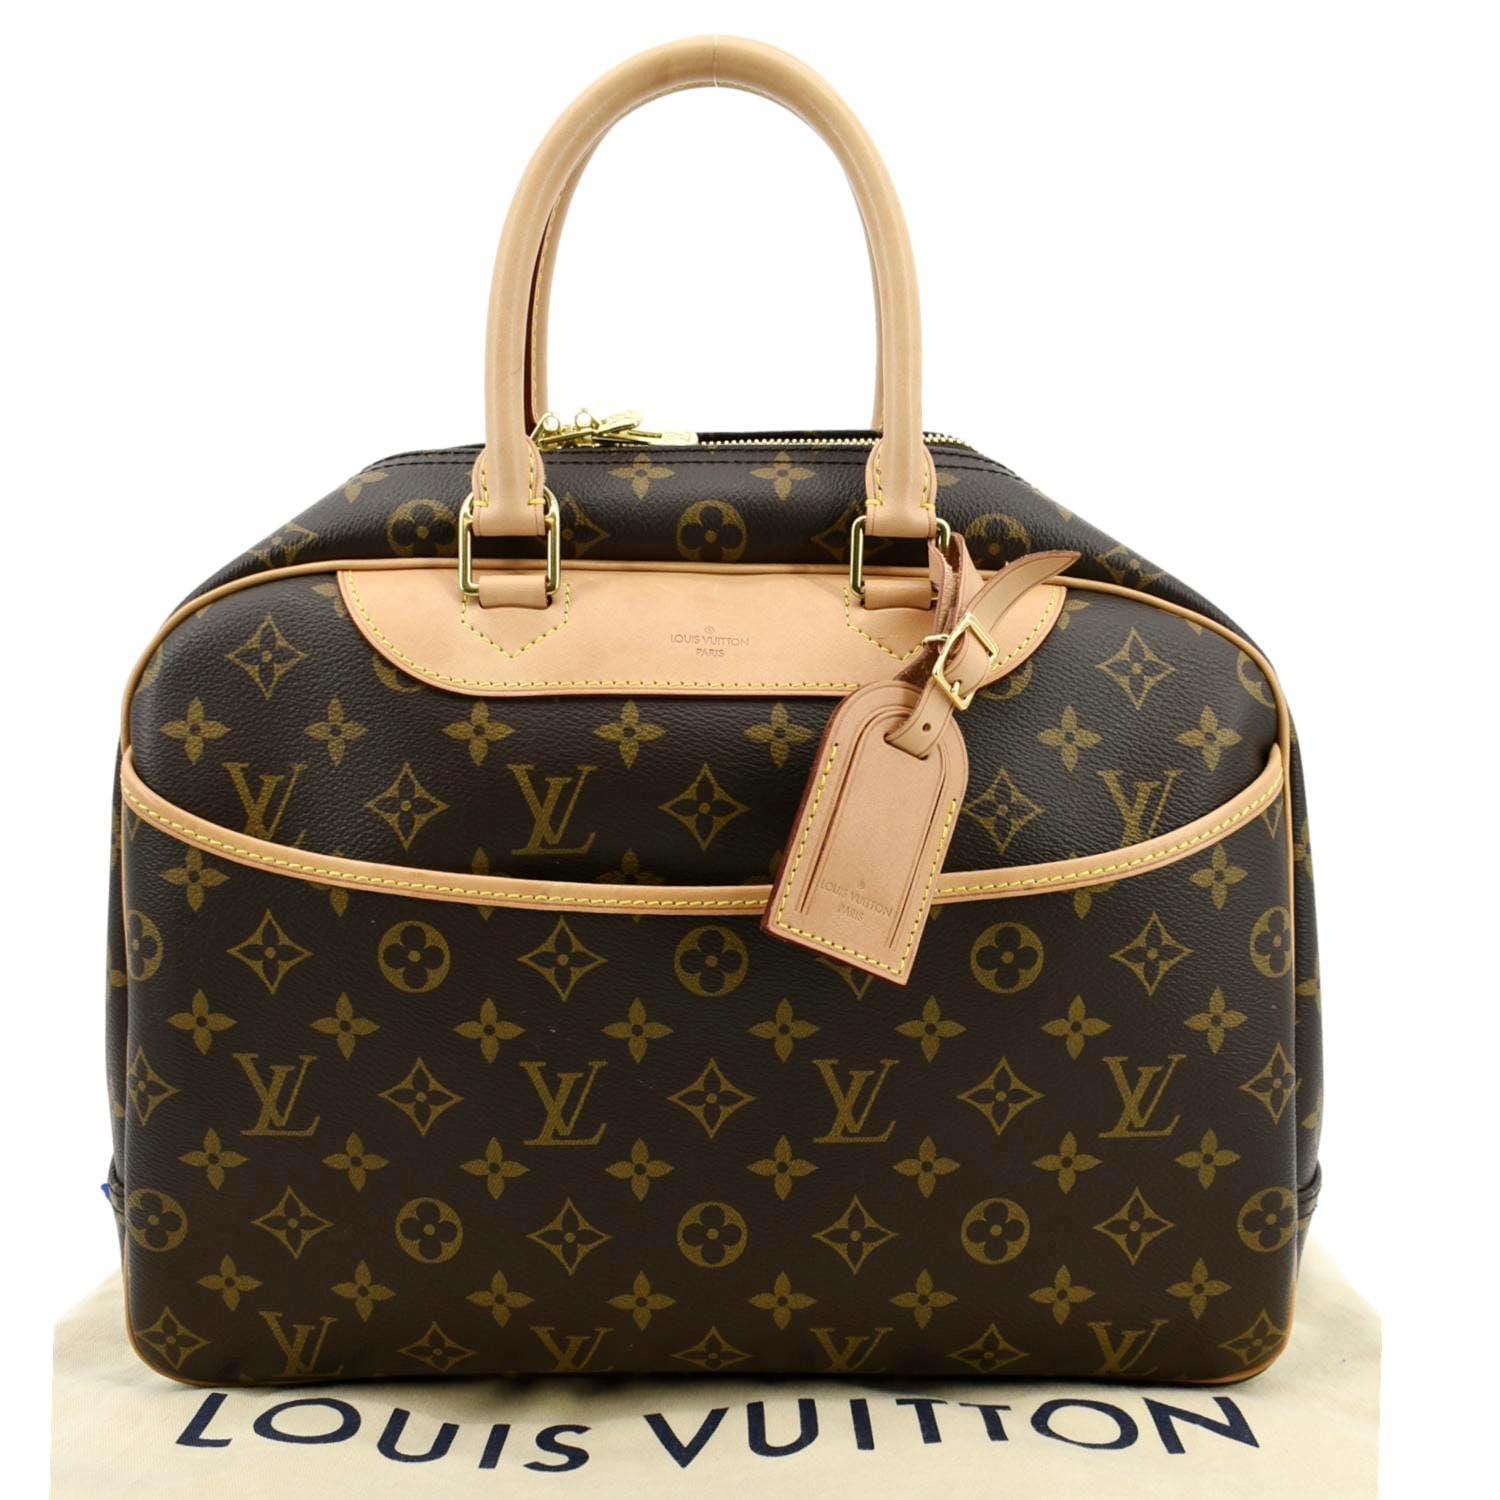 Louis Vuitton, Bags, Sold0 Authentic Louis Vuitton Deauville